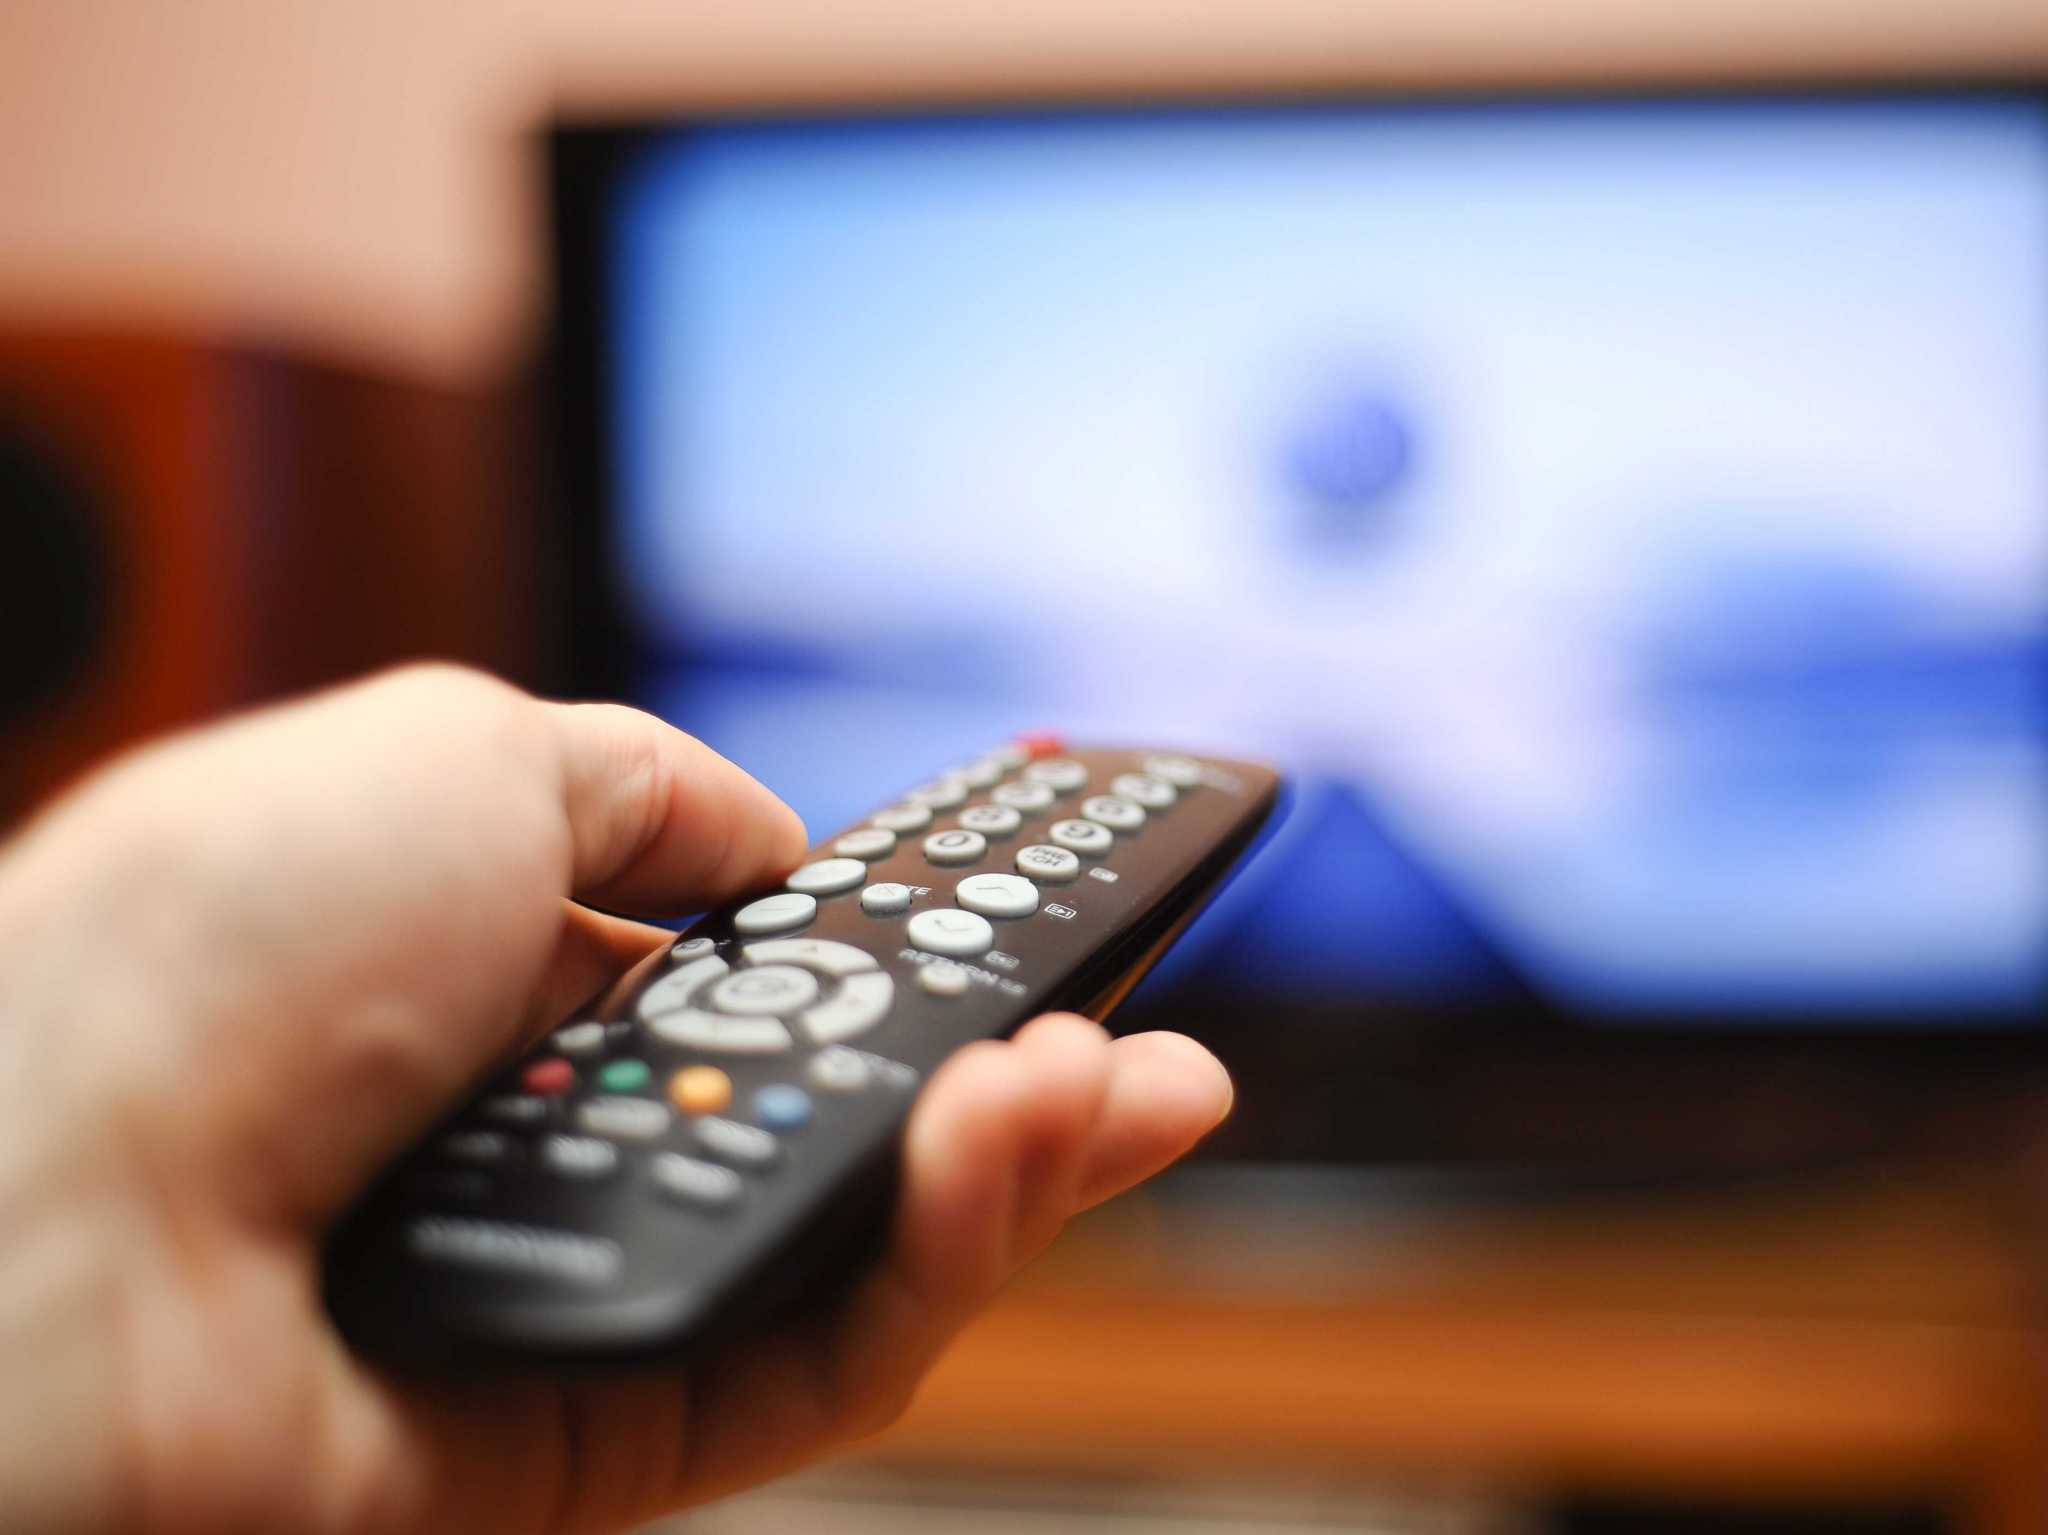 La nueva TV: Multiprogramación, encuestas y más contenido nacional